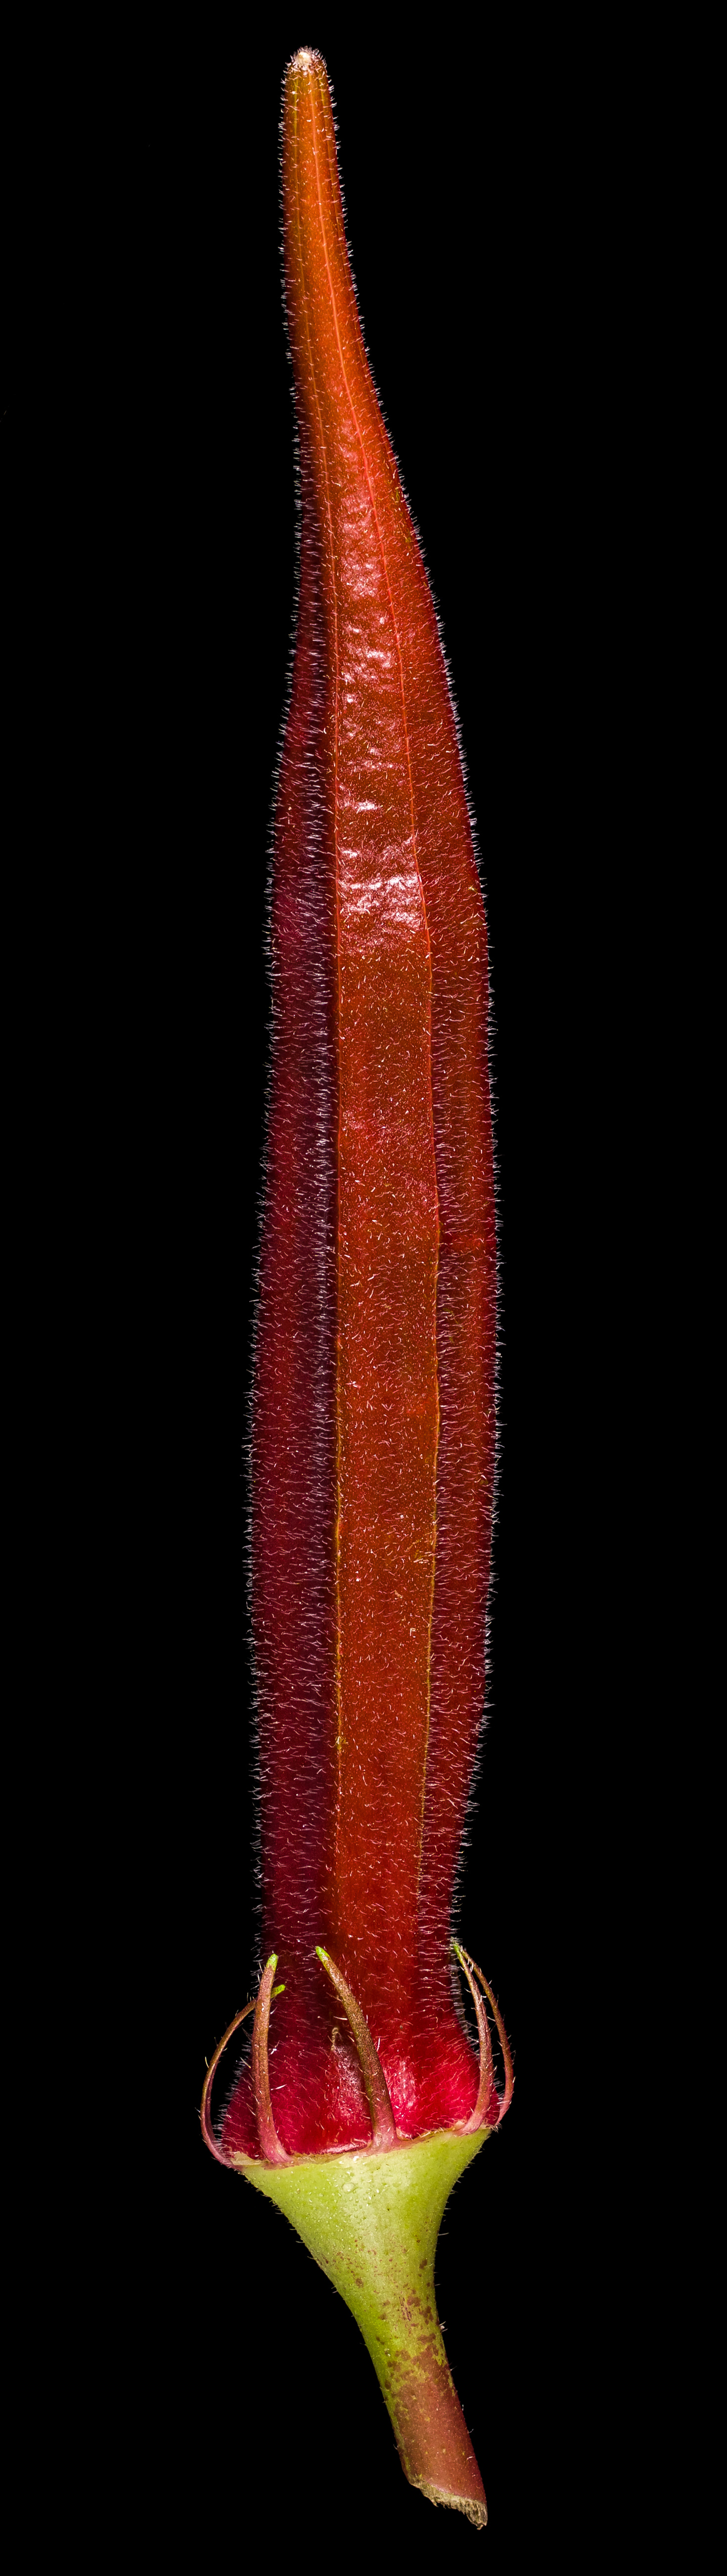 Der Gemüse-Eibisch (Okra): Abelmoschus esculentus ‚Red Velvet‘